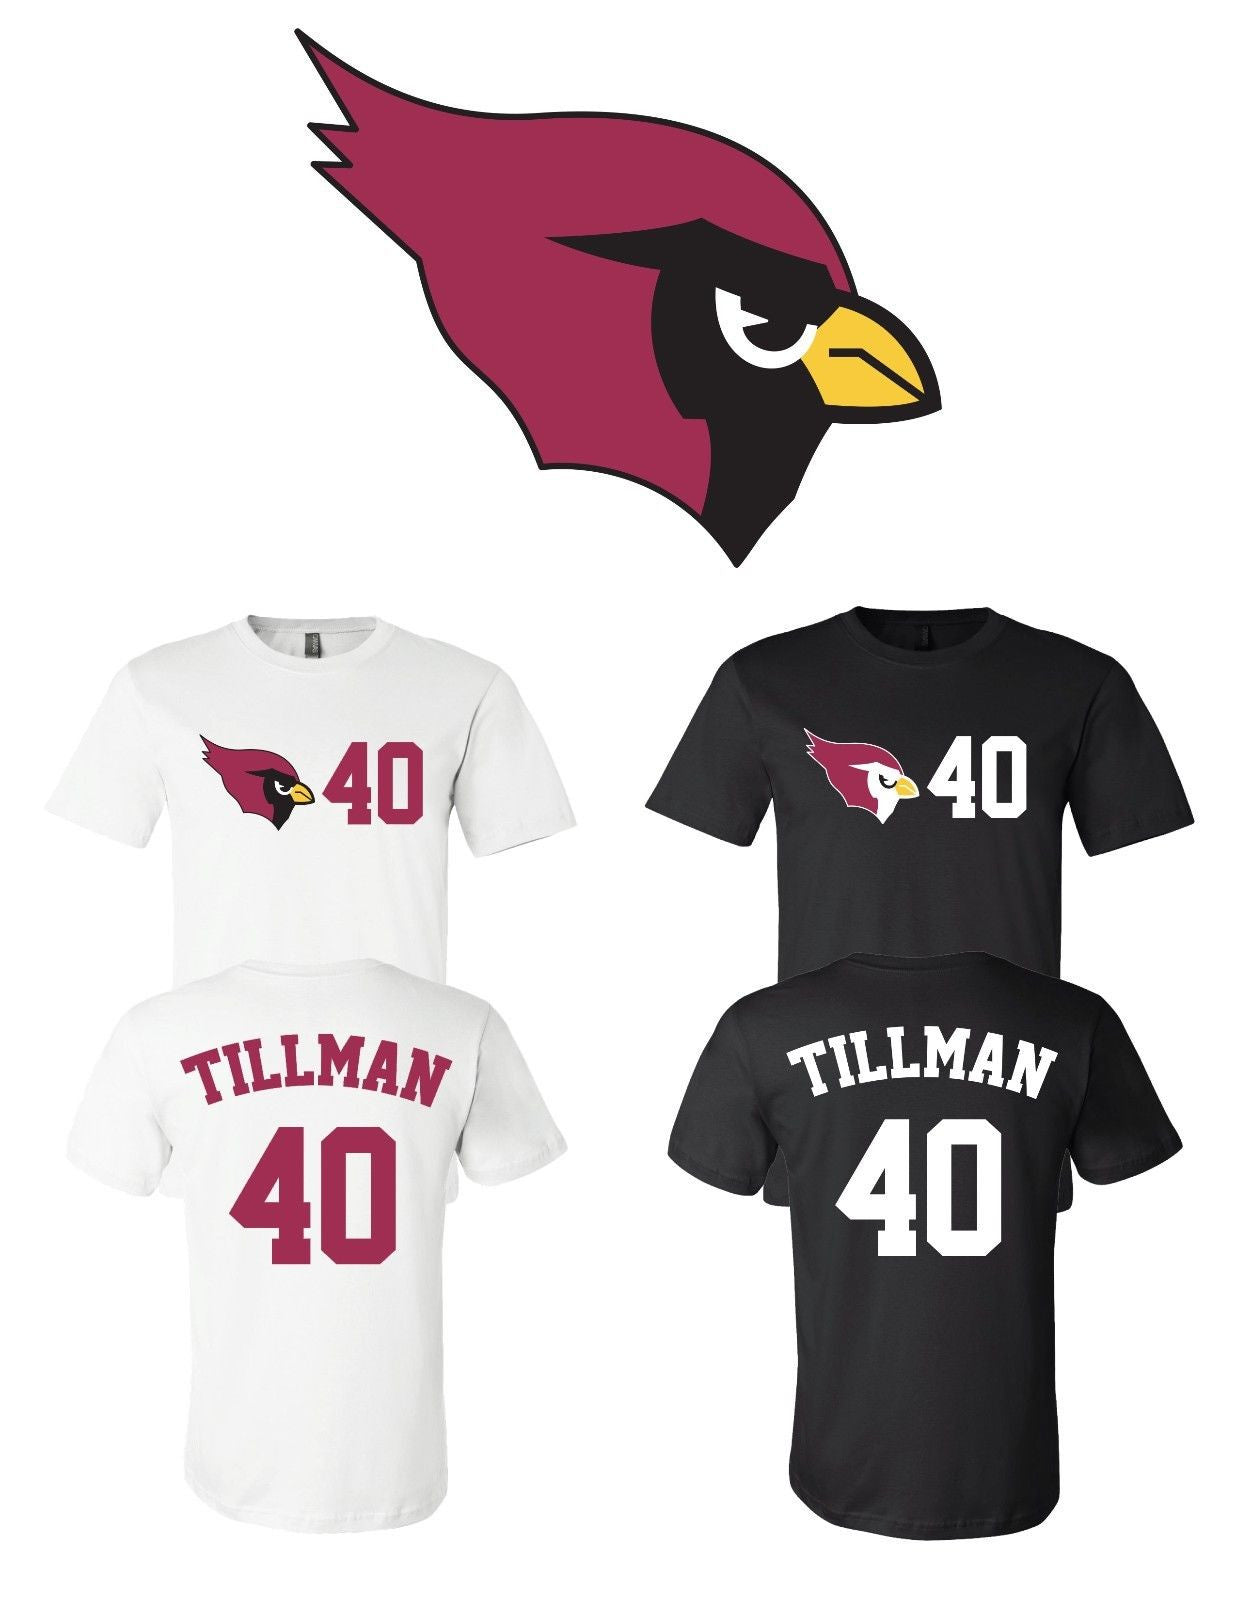 Pat Tillman #40 Arizona Cardinals Jersey player shirt